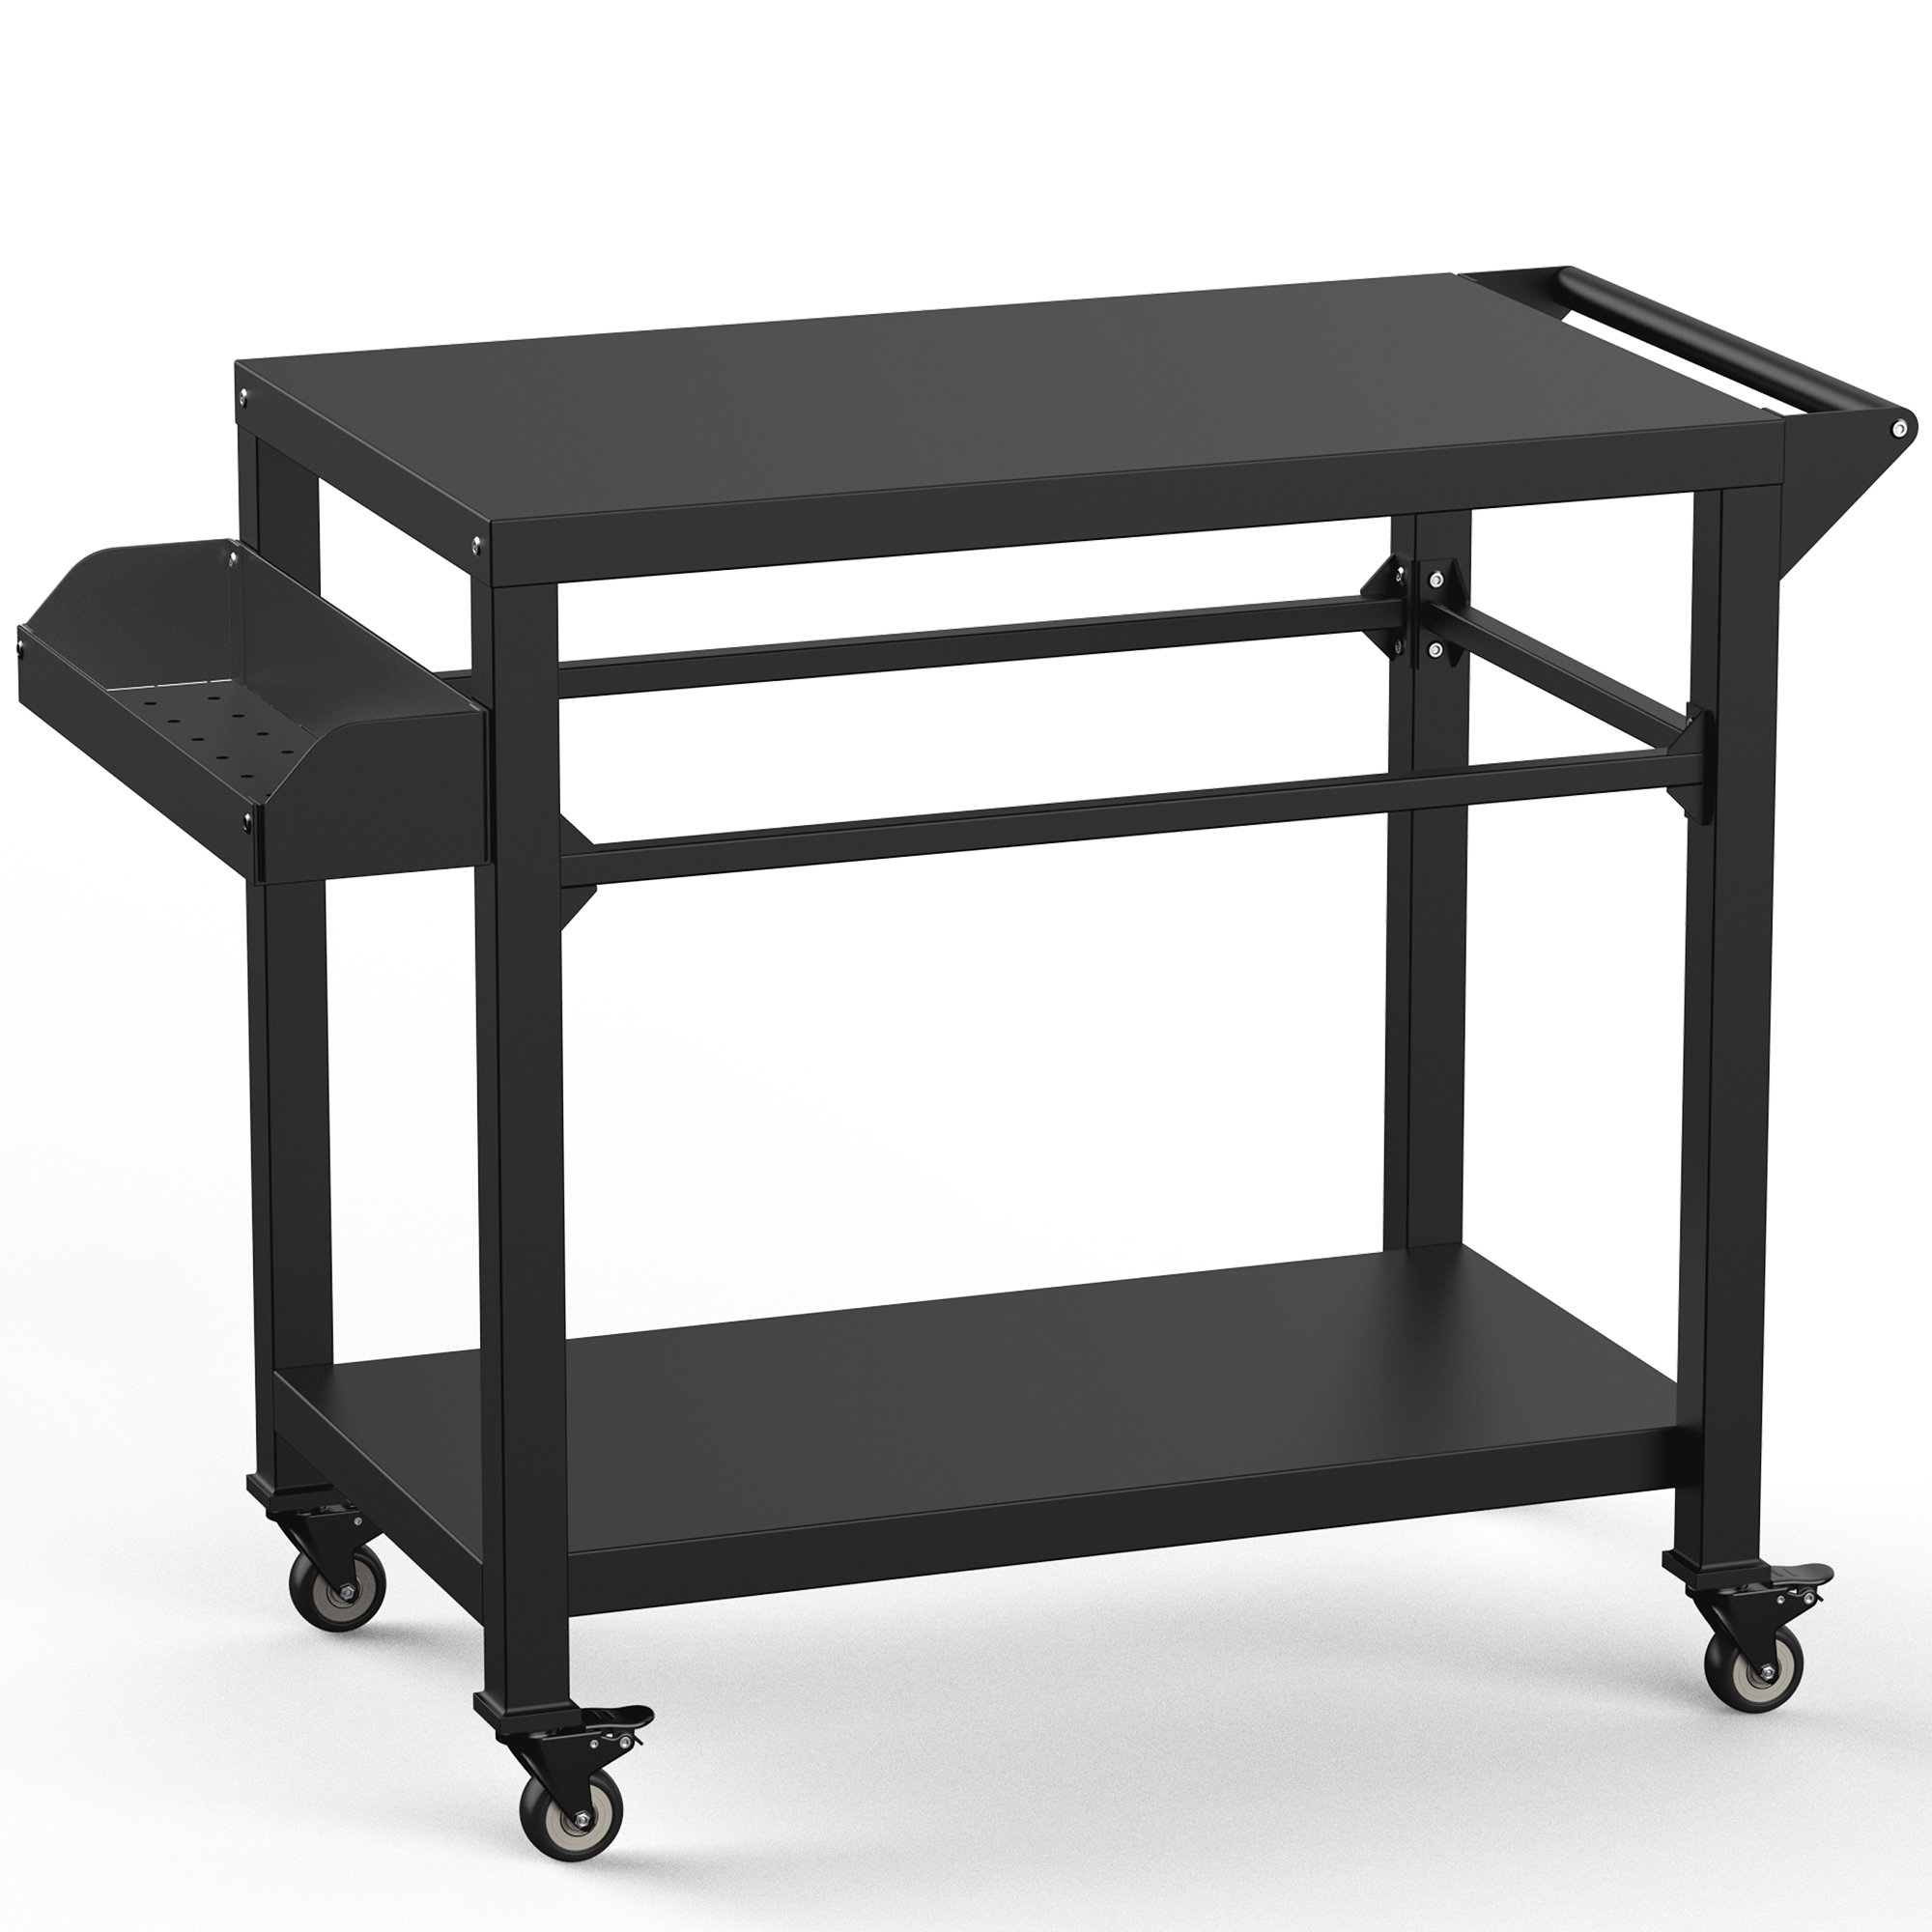 https://assets.wfcdn.com/im/24824433/compr-r85/2363/236326001/betterhood-355-w-x-195-d-metal-grill-cart-or-table.jpg